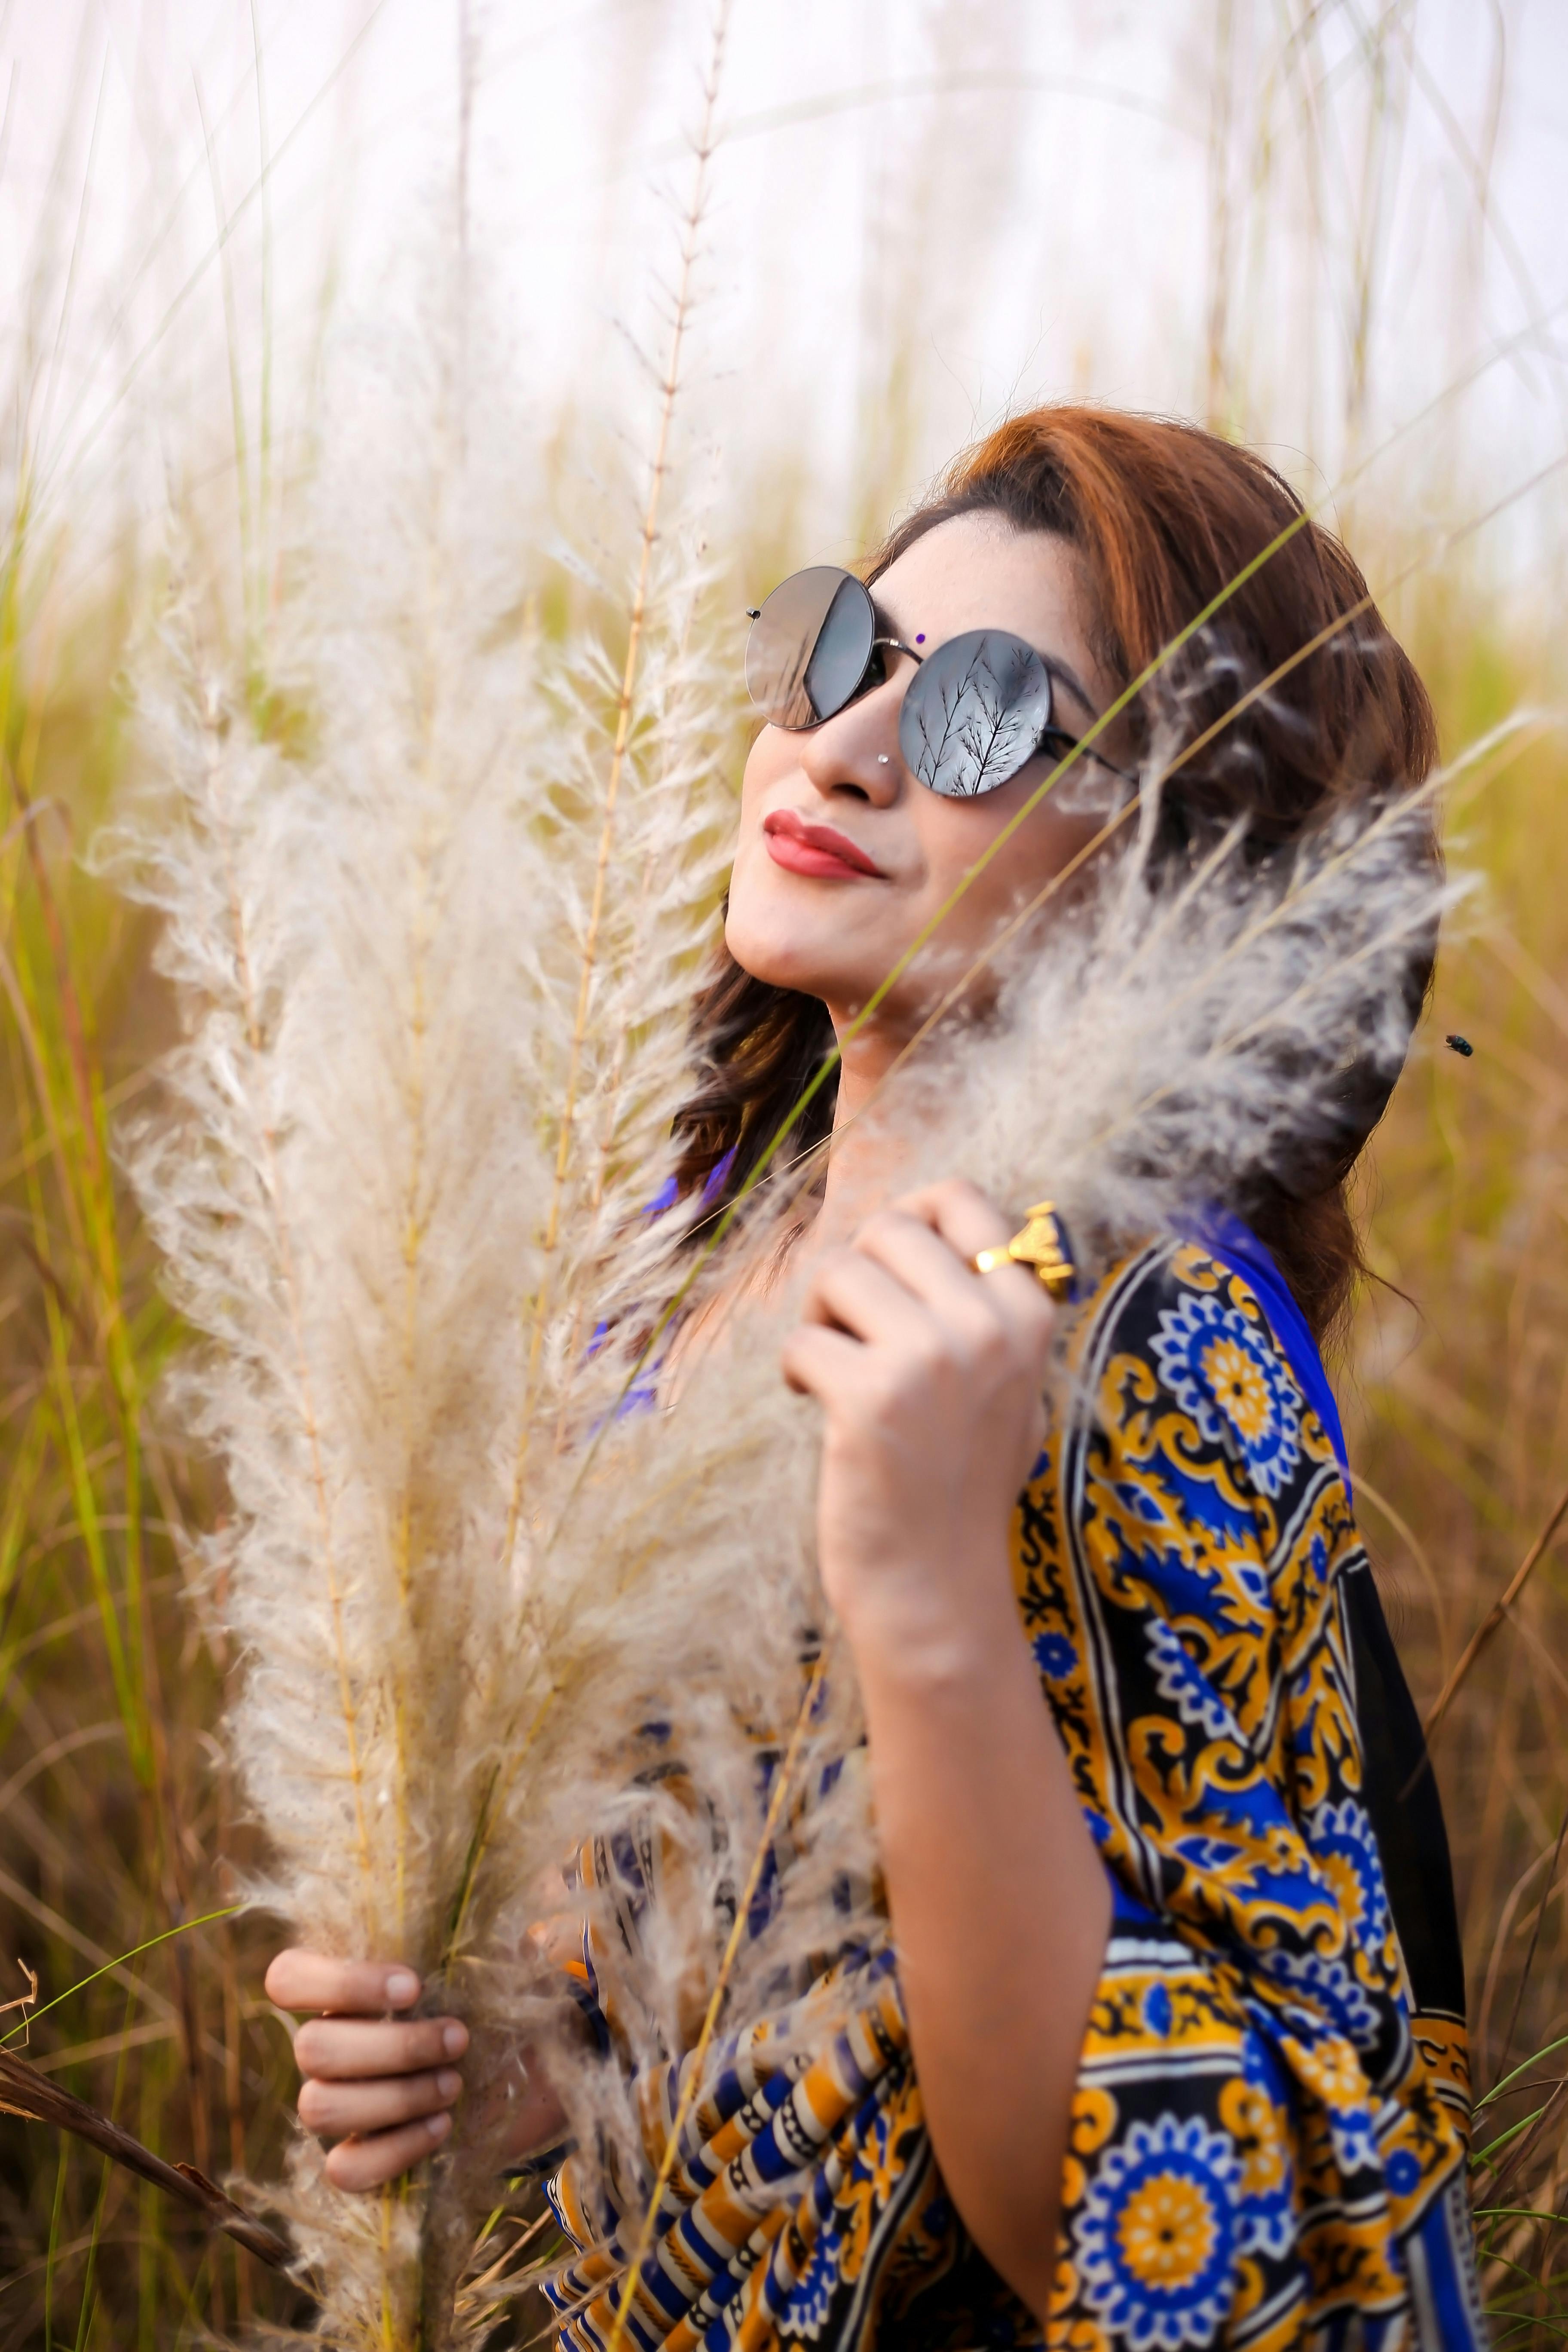 3,000+ Free Sunglasses & Fashion Images - Pixabay